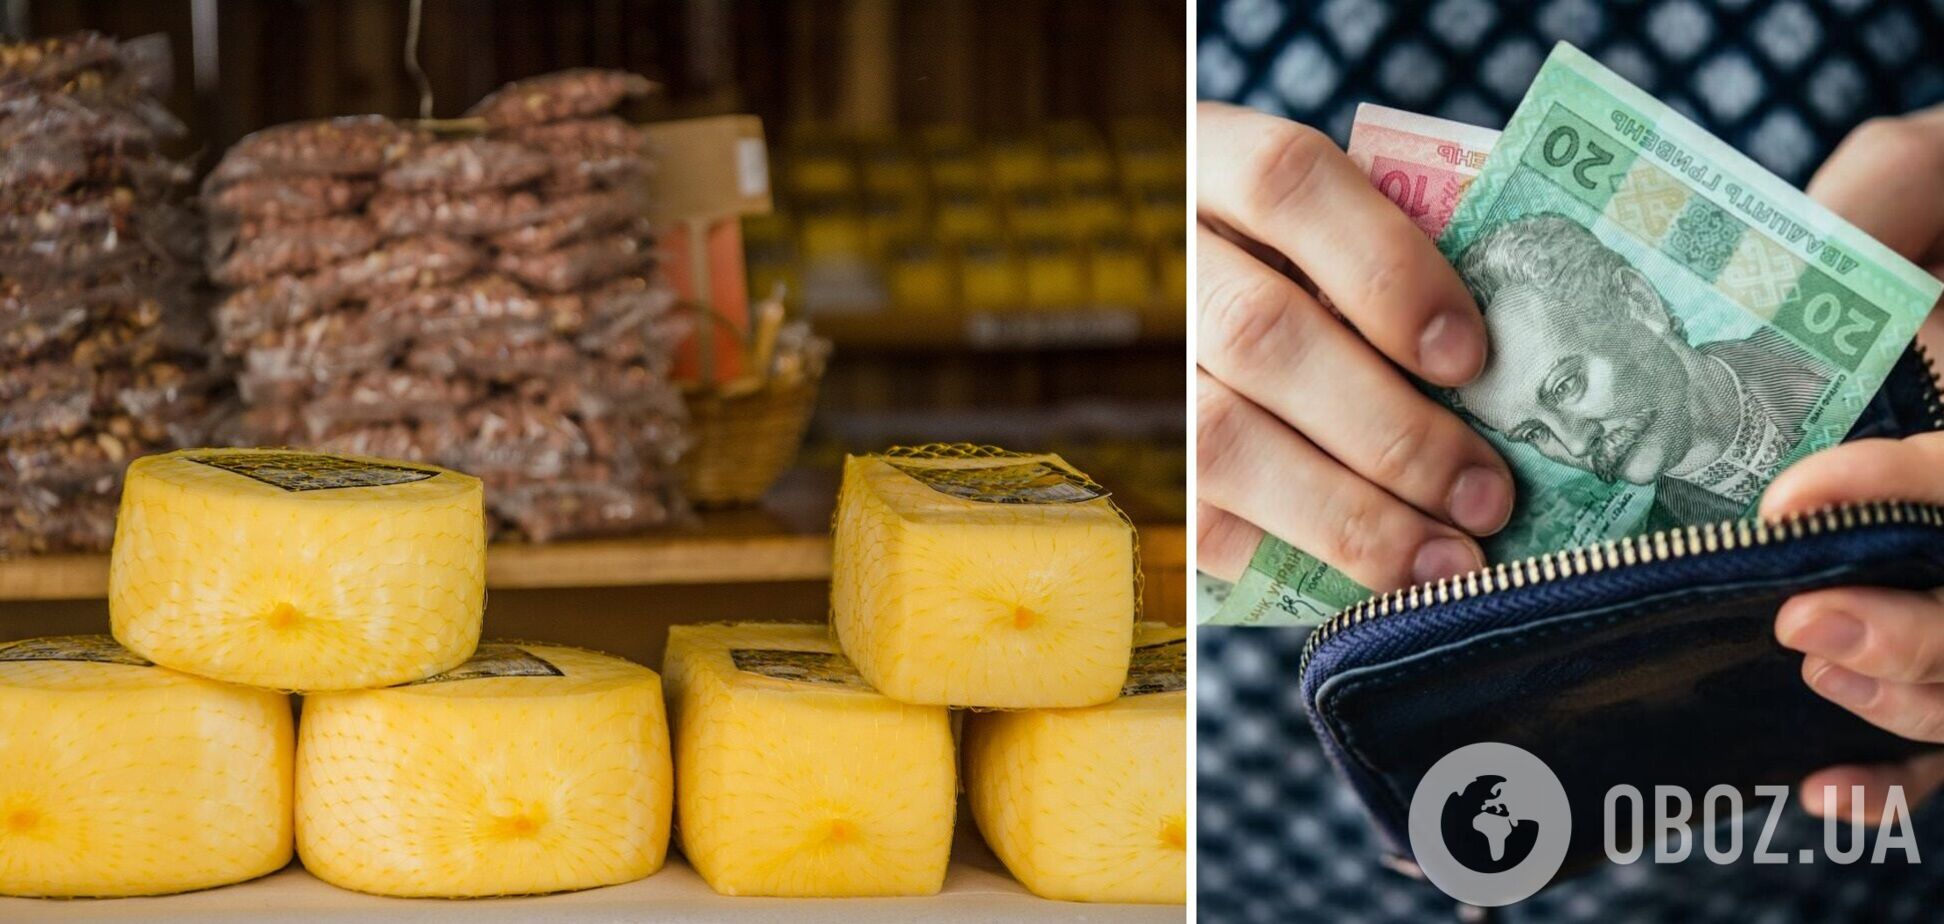 Напередодні зимових свят до України завезли близько 4 тис. тонн сиру